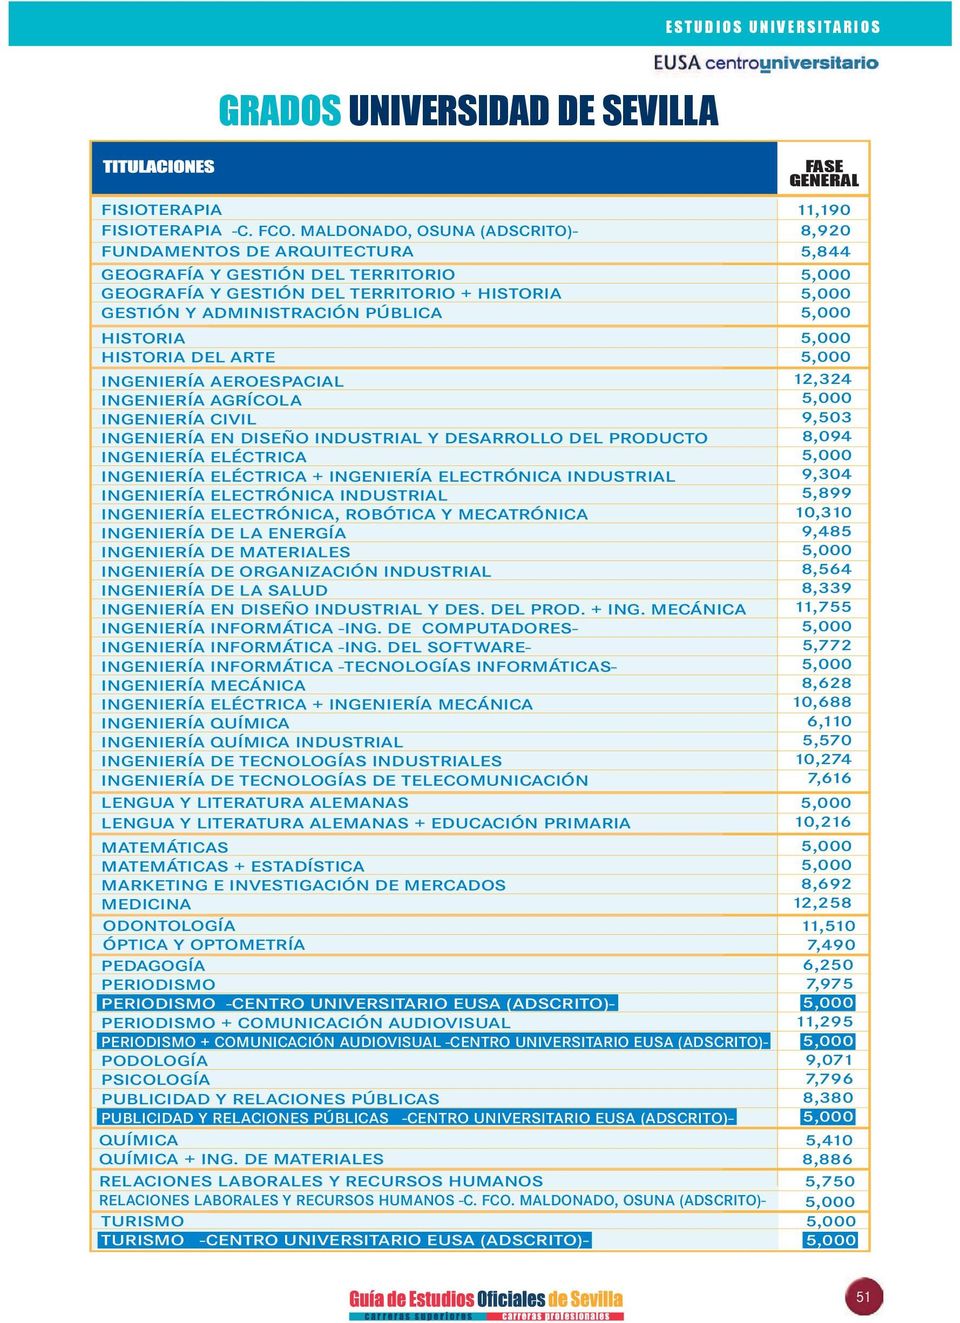 INGENIERÍA AEROESPACIAL INGENIERÍA AGRÍCOLA INGENIERÍA CIVIL INGENIERÍA EN DISEÑO INDUSTRIAL Y DESARROLLO DEL PRODUCTO INGENIERÍA ELÉCTRICA INGENIERÍA ELÉCTRICA + INGENIERÍA ELECTRÓNICA INDUSTRIAL